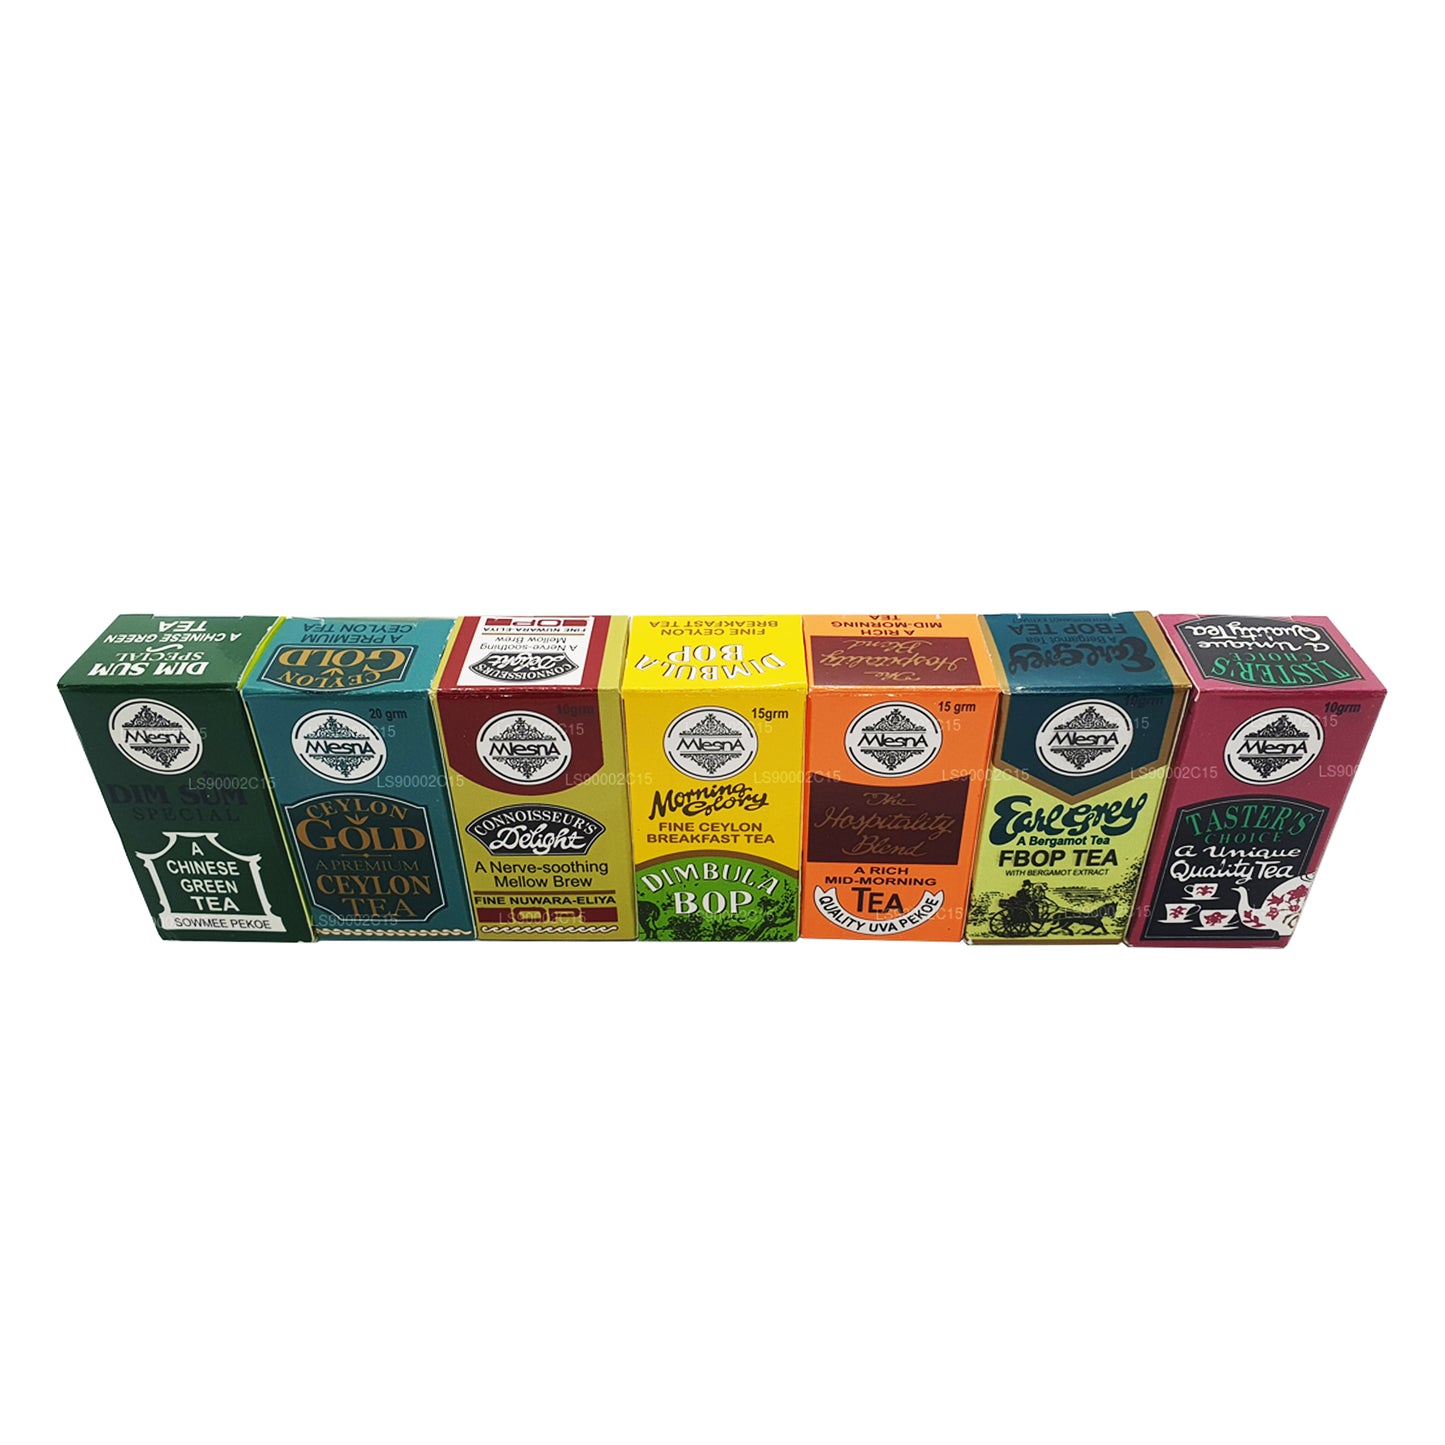 Mlesna 7 Assorted Tea Carton (100g)